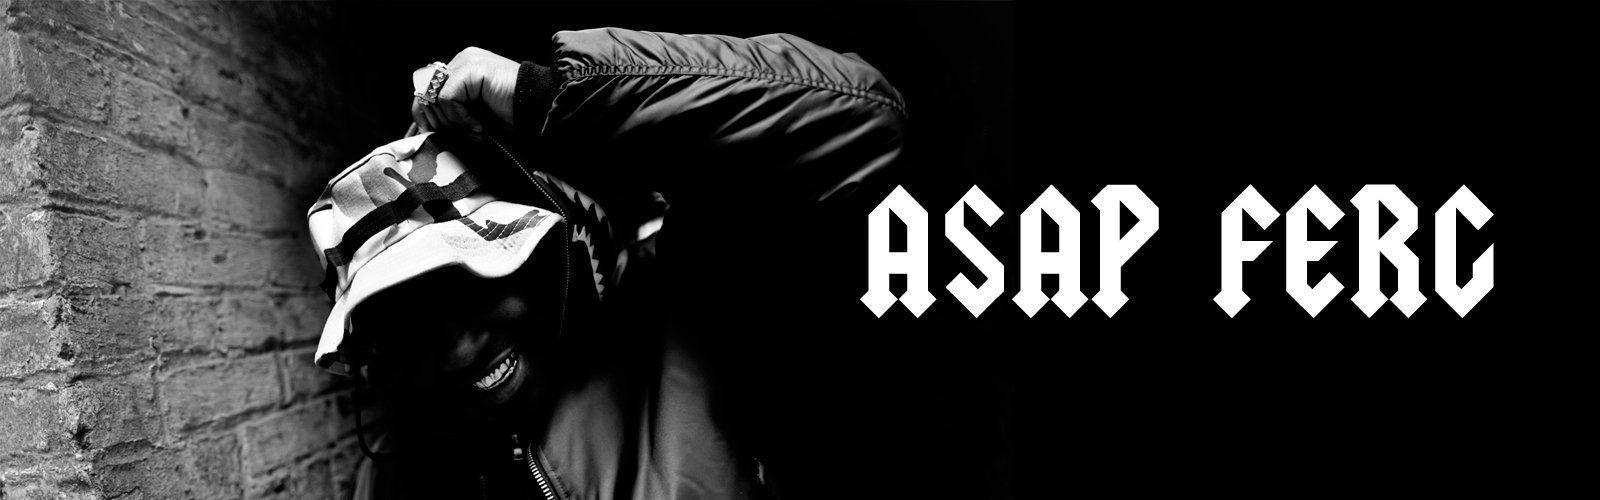 ASAP Mob Logo - ASAP Ferg | A$AP Ferg | Trap Lord - Traplord JV